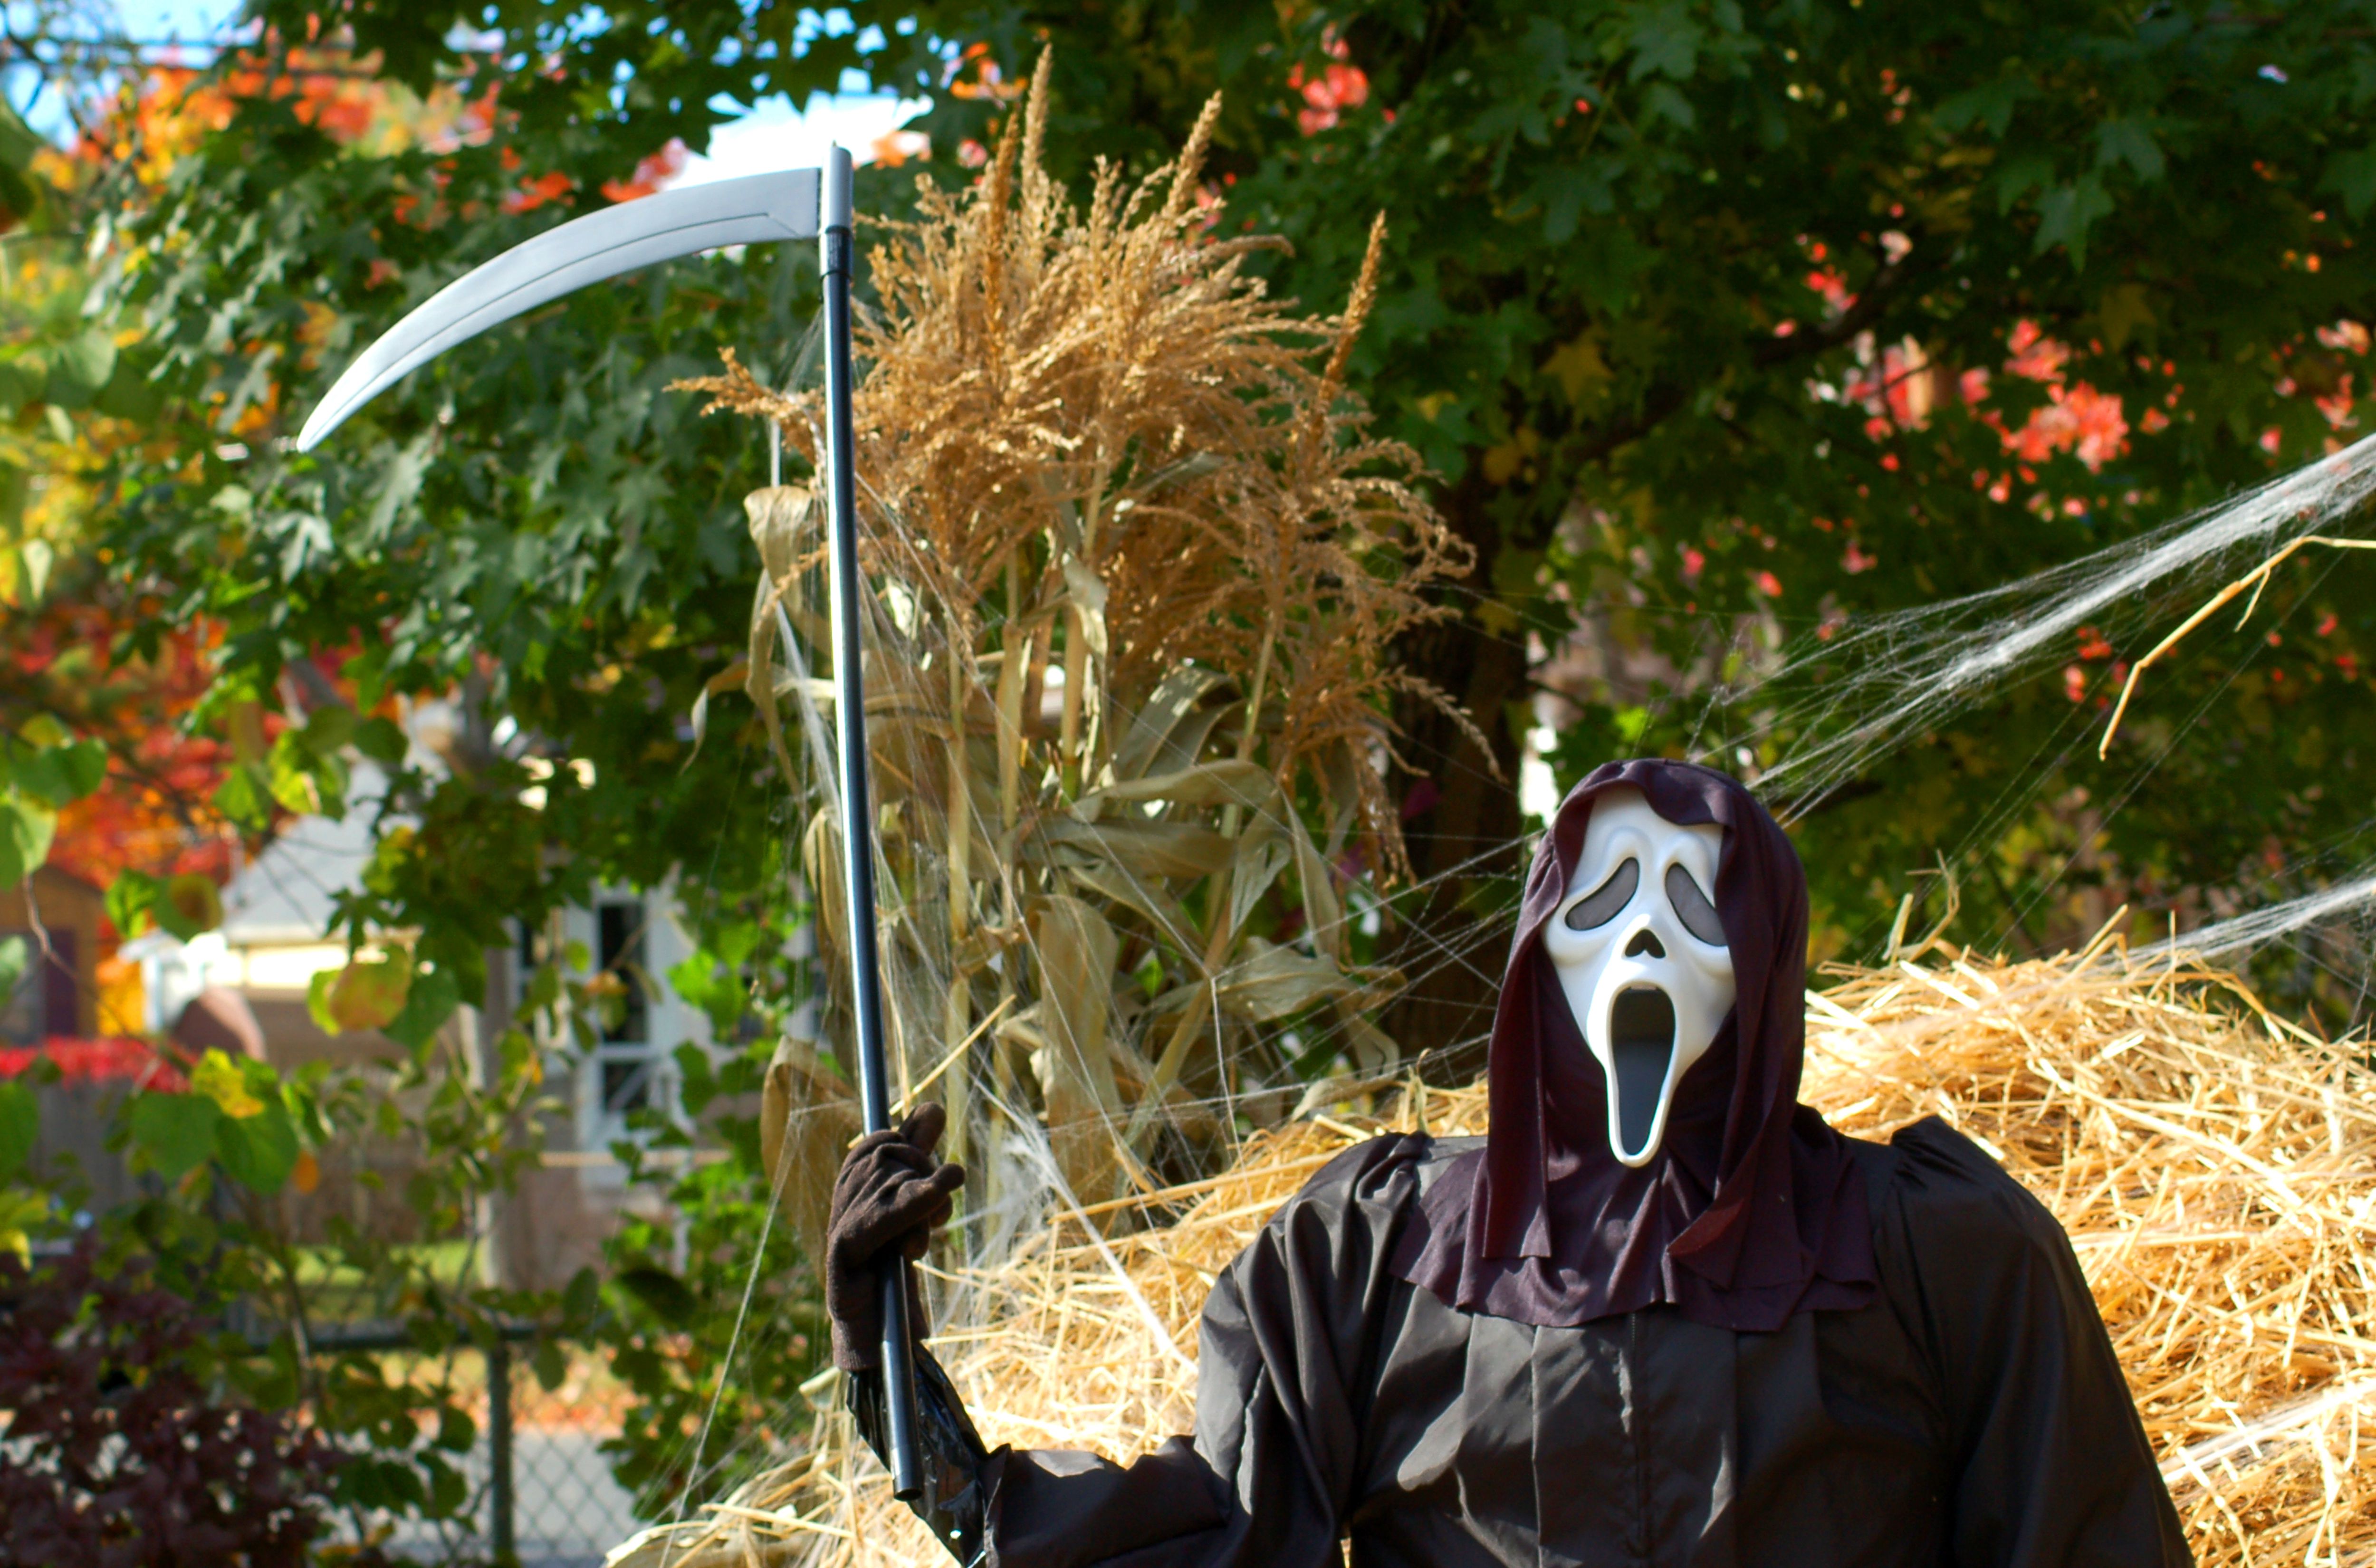 grim reaper scythe for lawn